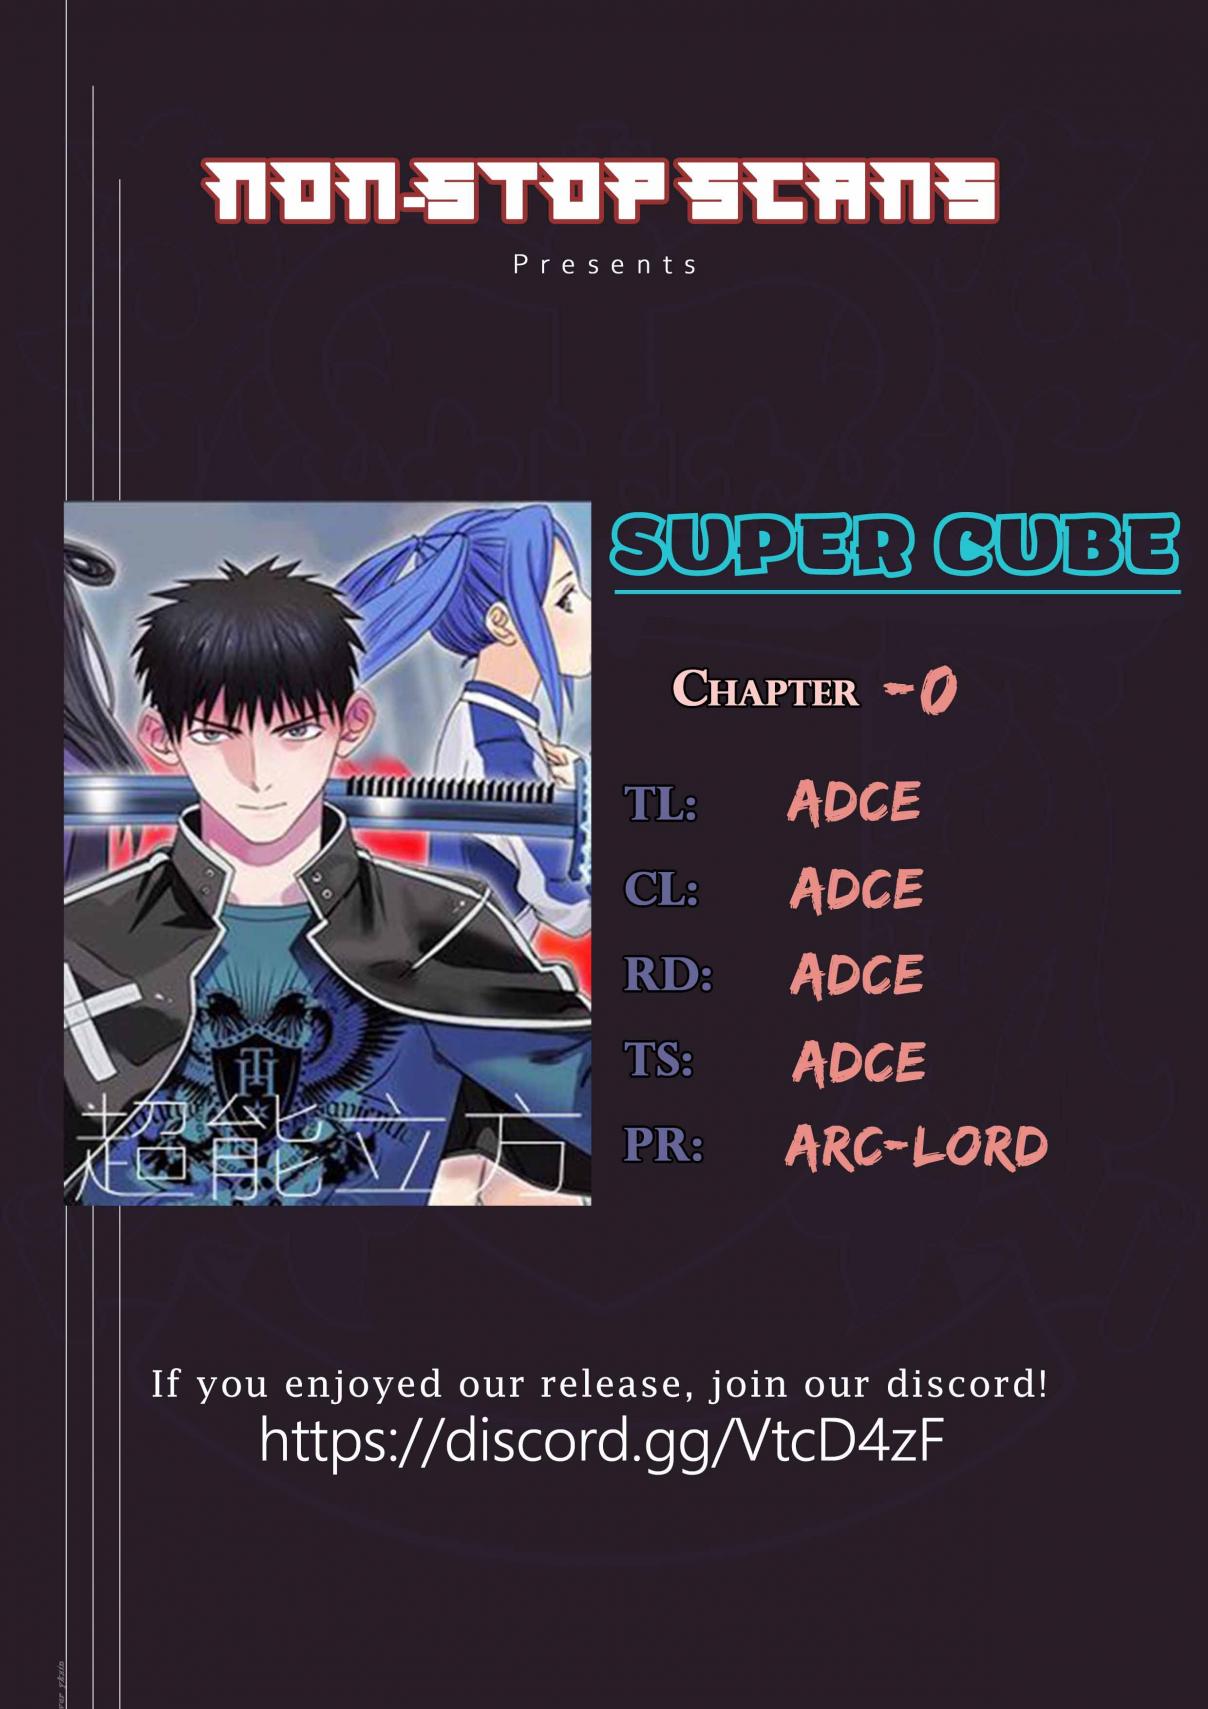 Super Cube Ch. 0 prologue